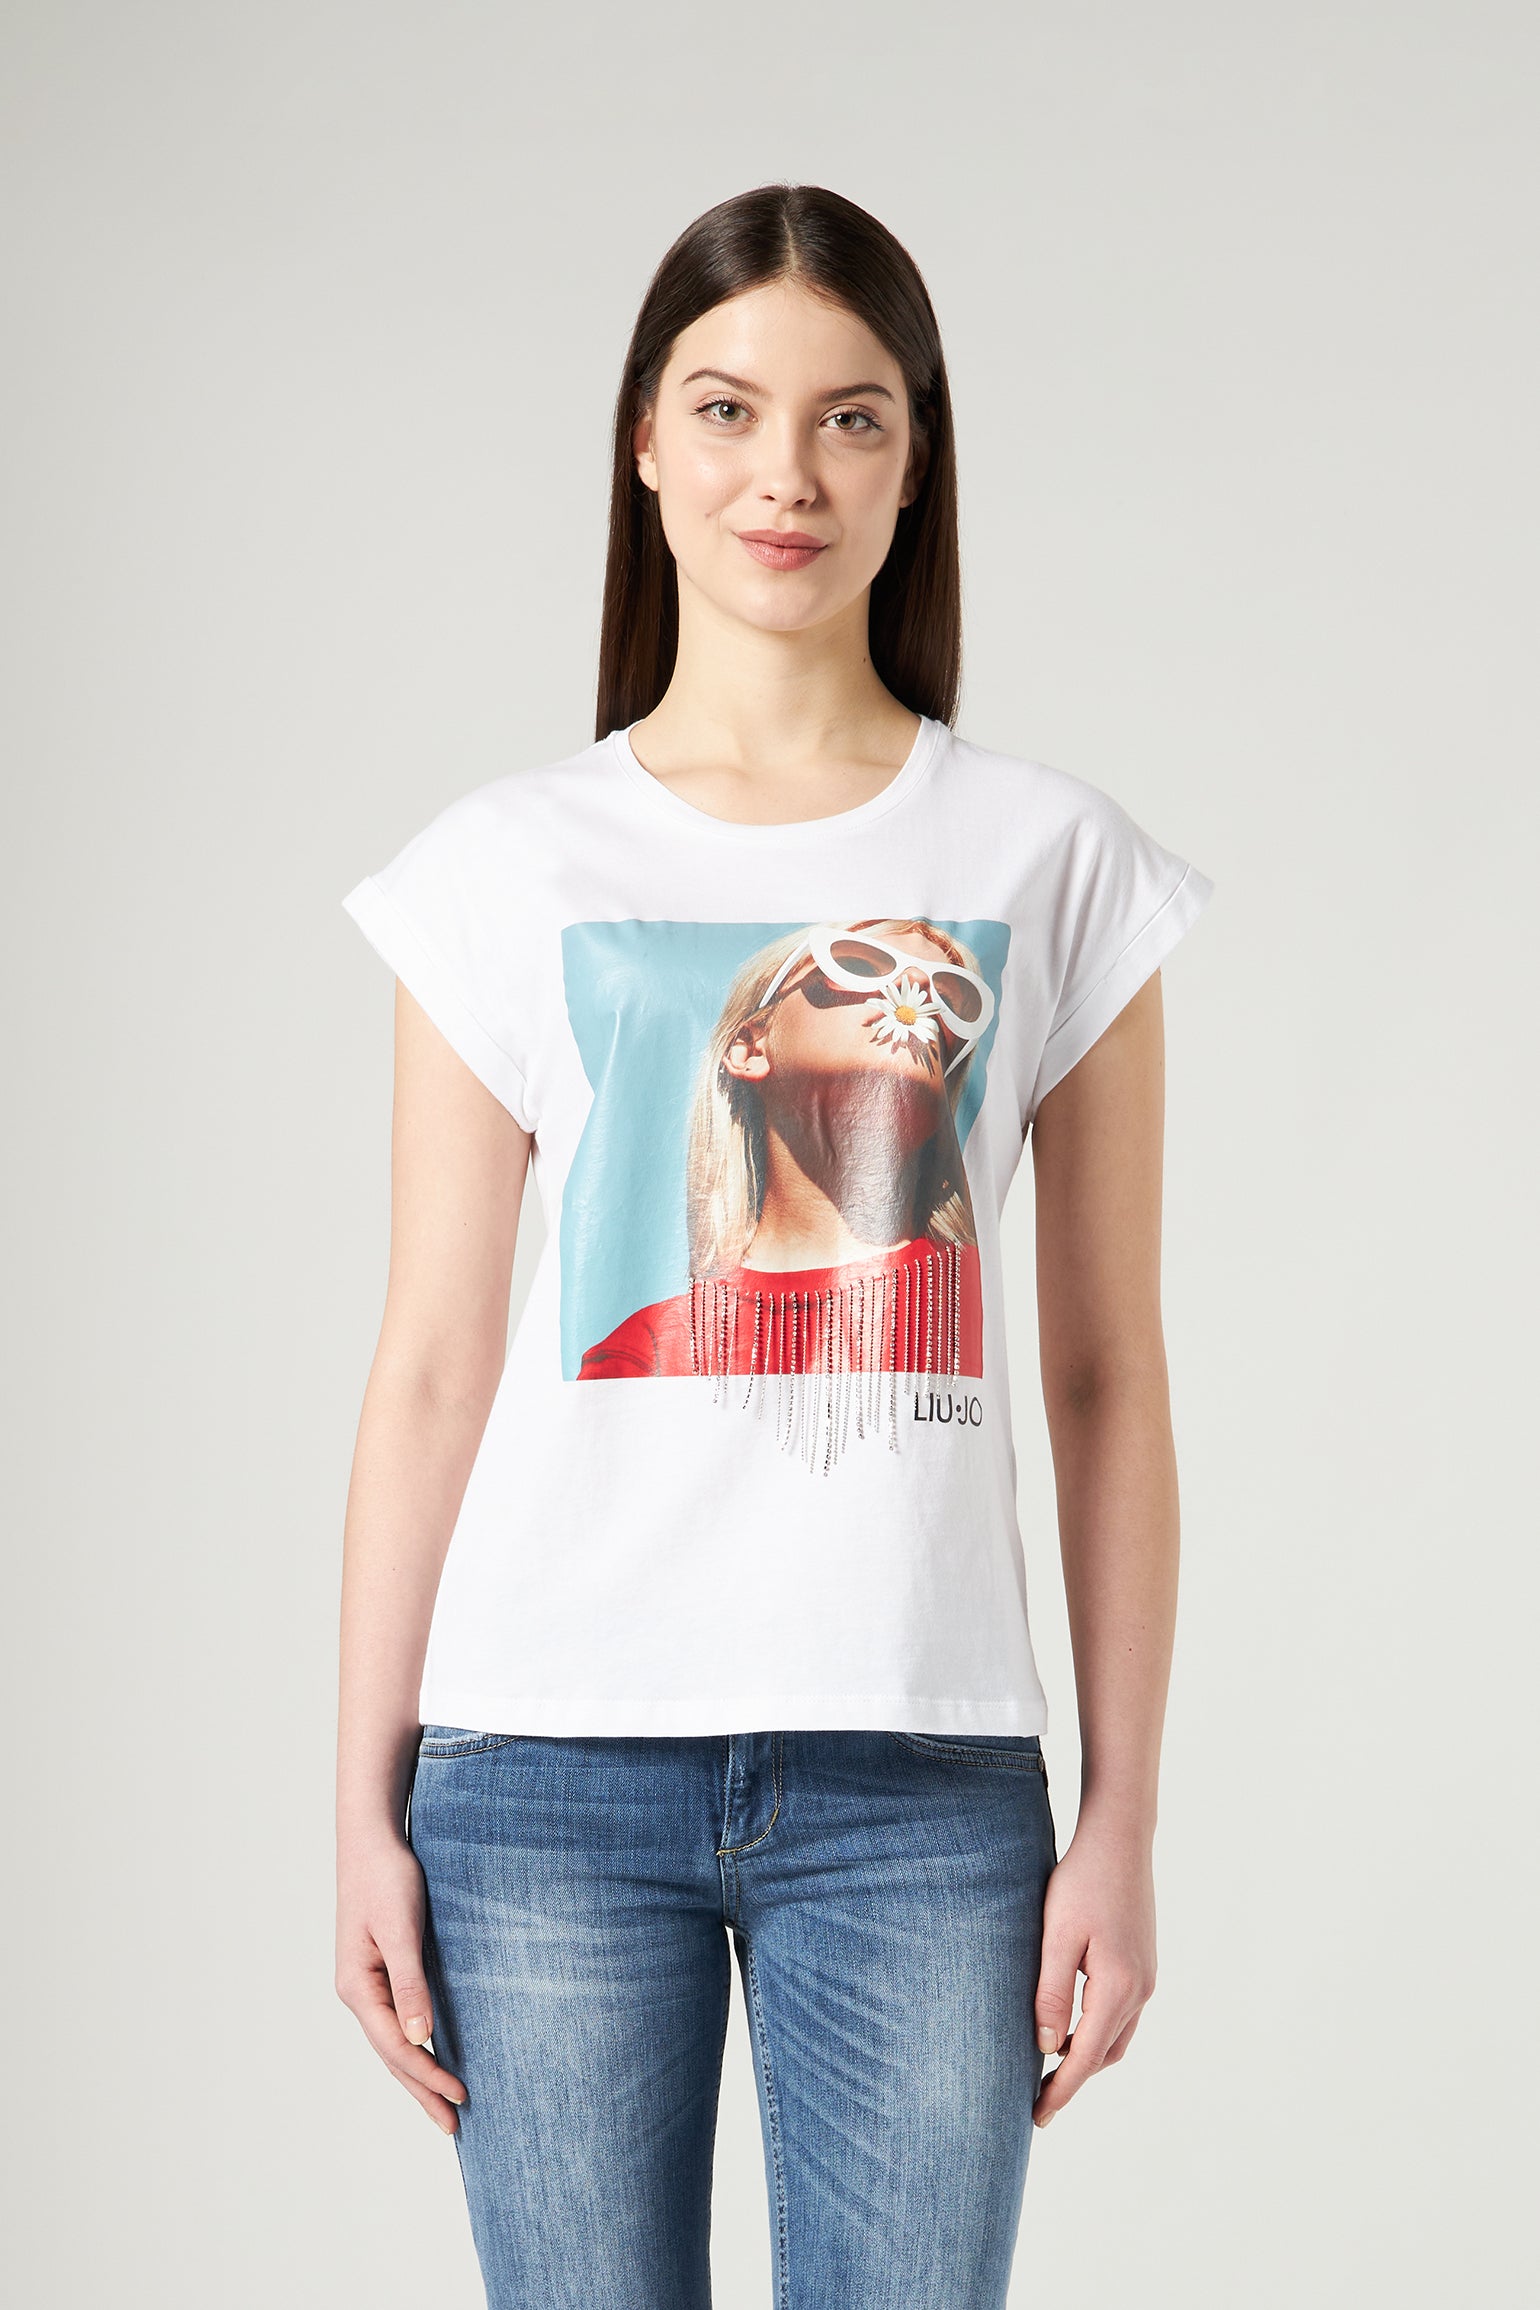 LIU JO T-shirt with Print